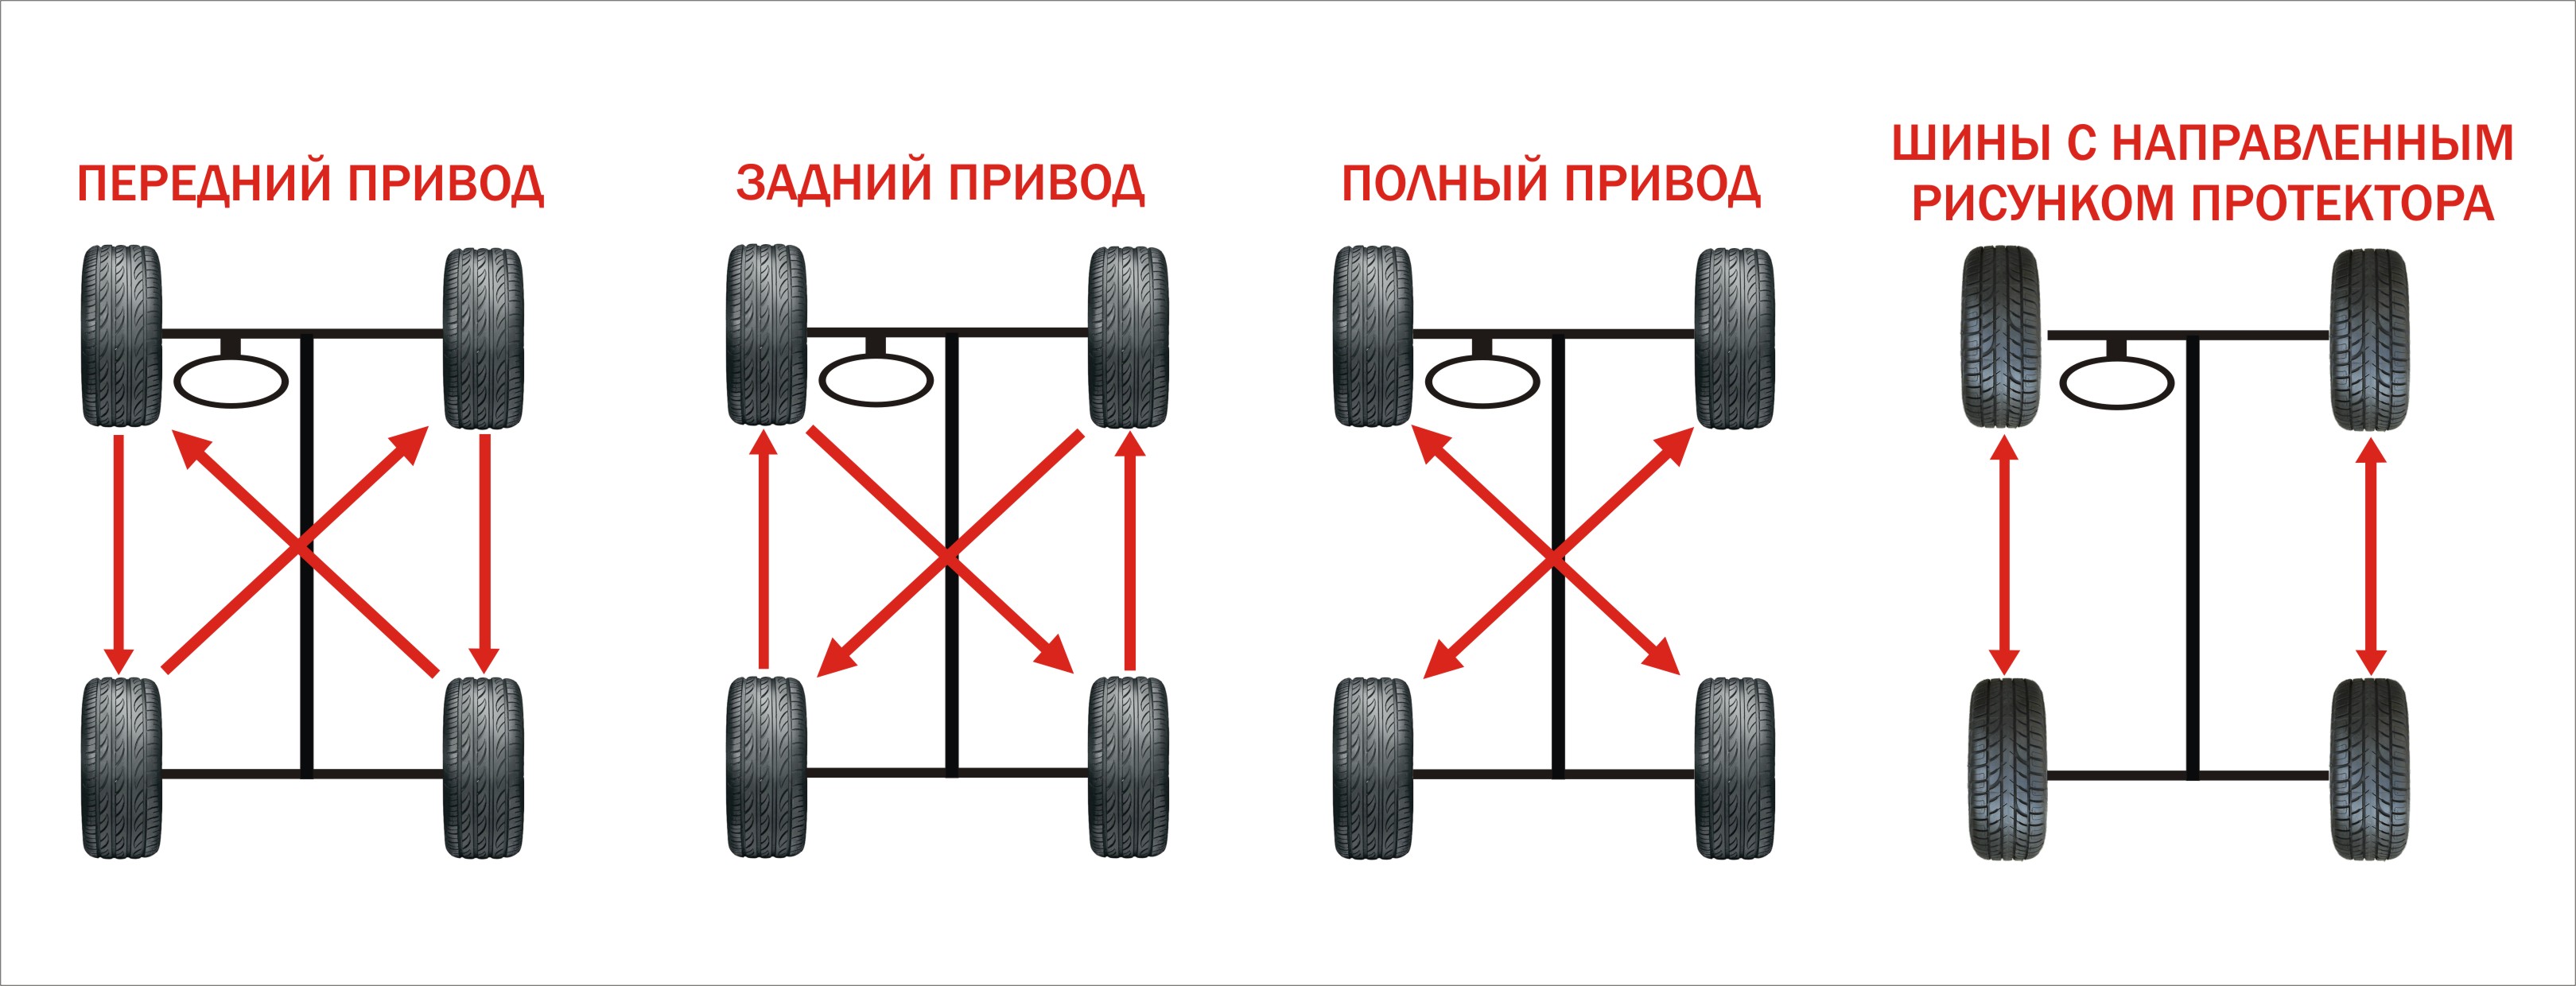 Надо ли менять колеса. Схема установки асимметричных шин. Схема перестановки колес для равномерного износа. Схема замены колёс для равномерного износа. Схема перестановки колес передний привод.